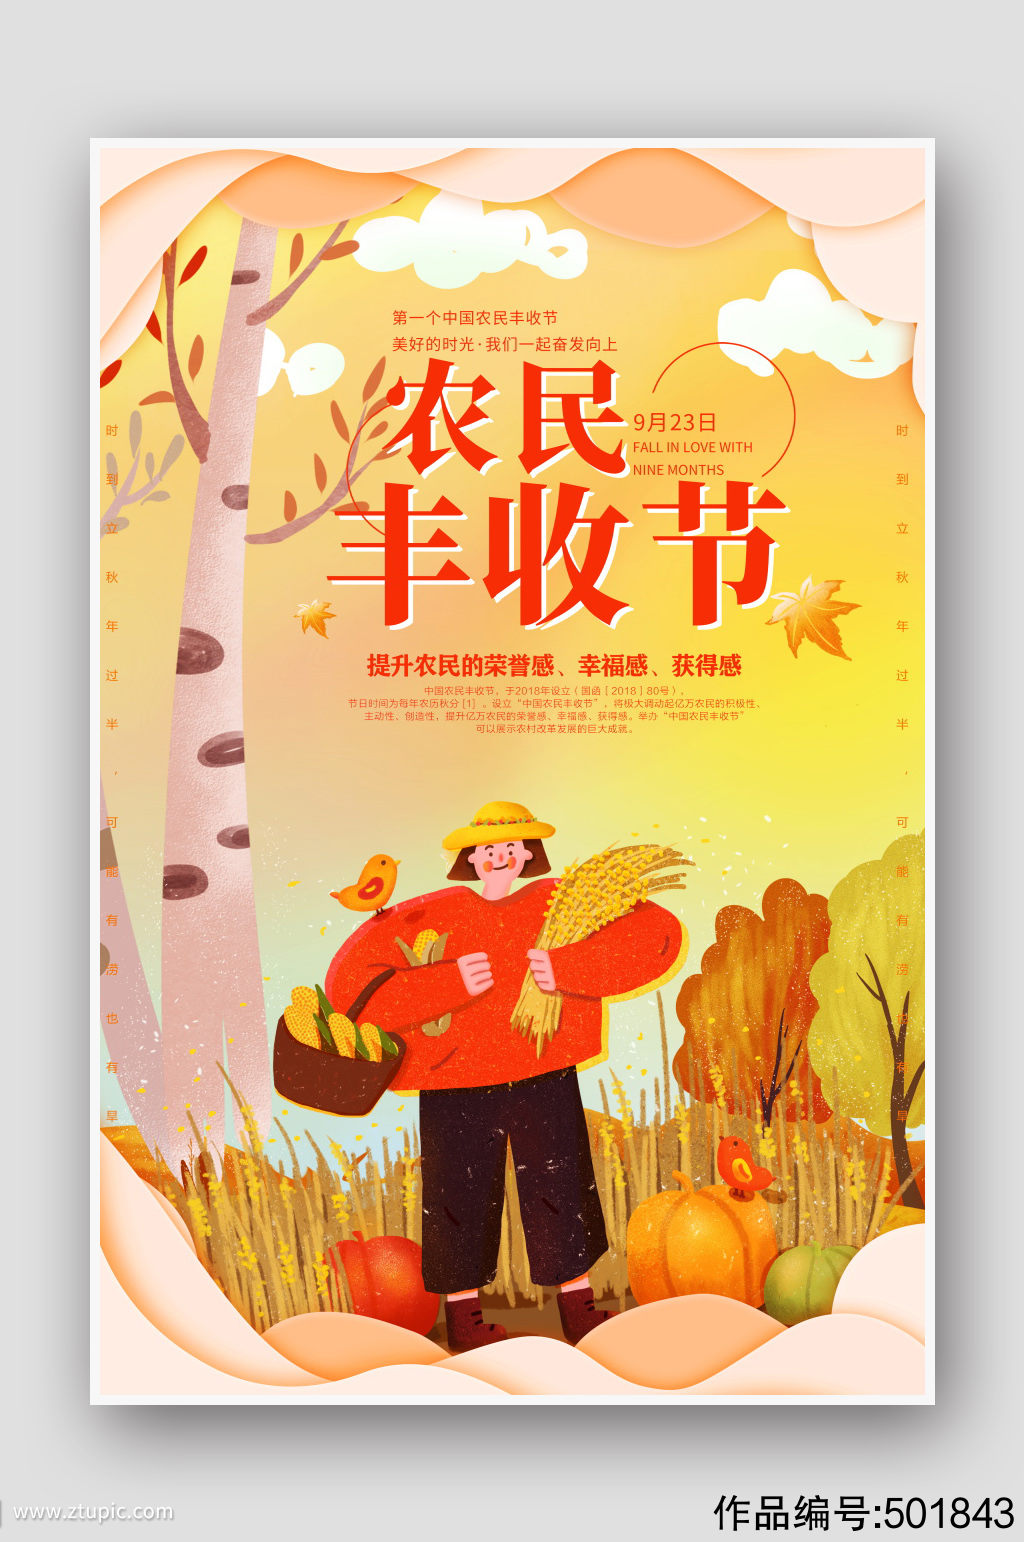 卡通手绘中国农民丰收节海报素材